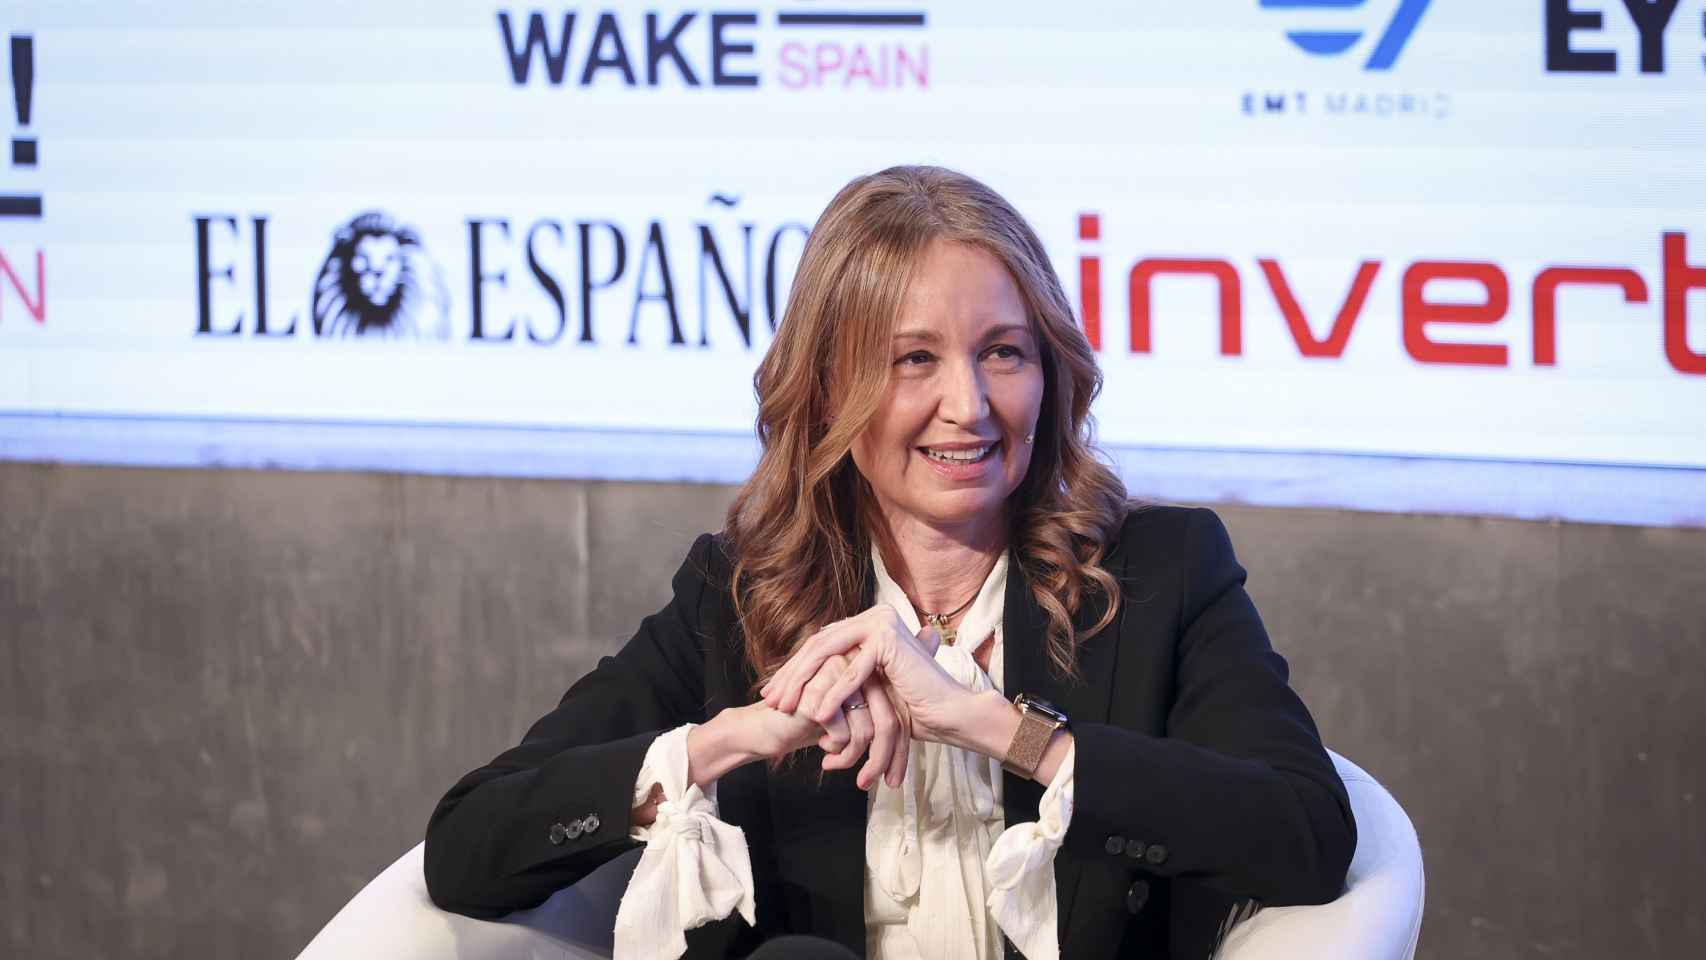 Loreto Ordóñez, consejera delegada de Engie en España, durante su intervención en 'Wake up, Spain!'.